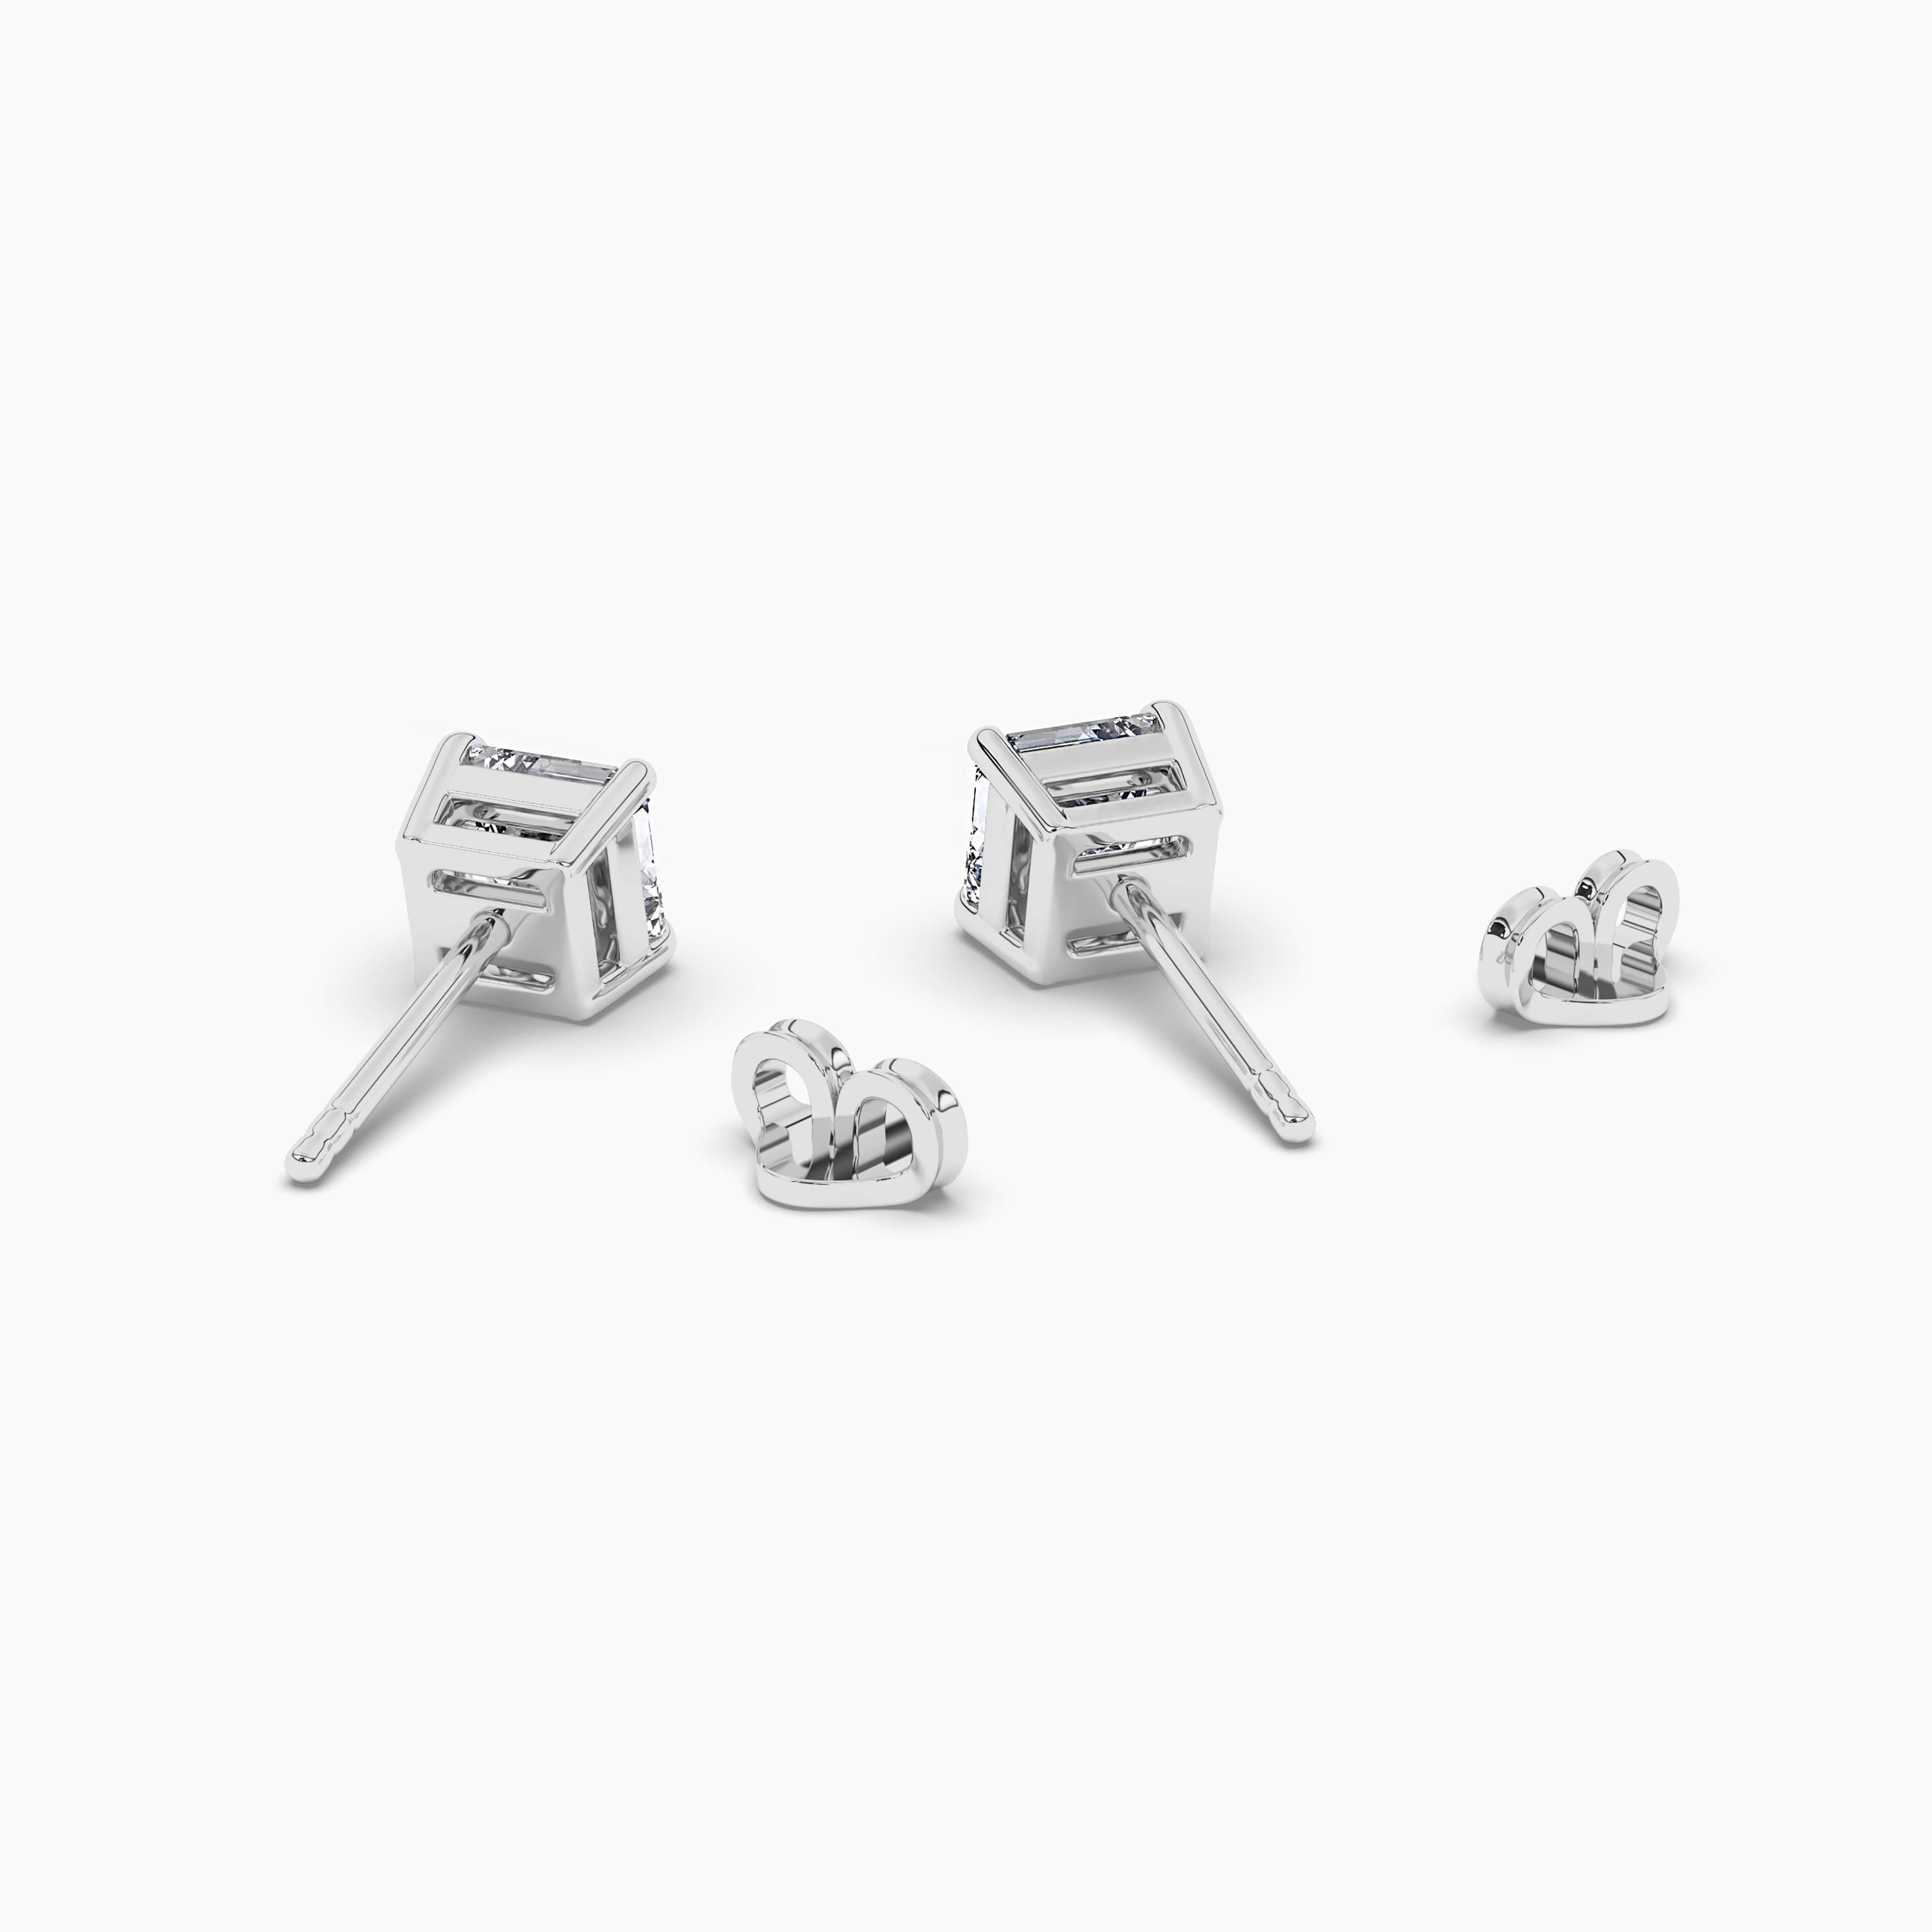 White Gold Asscher Cut Claw Prong Diamond Stud Earrings